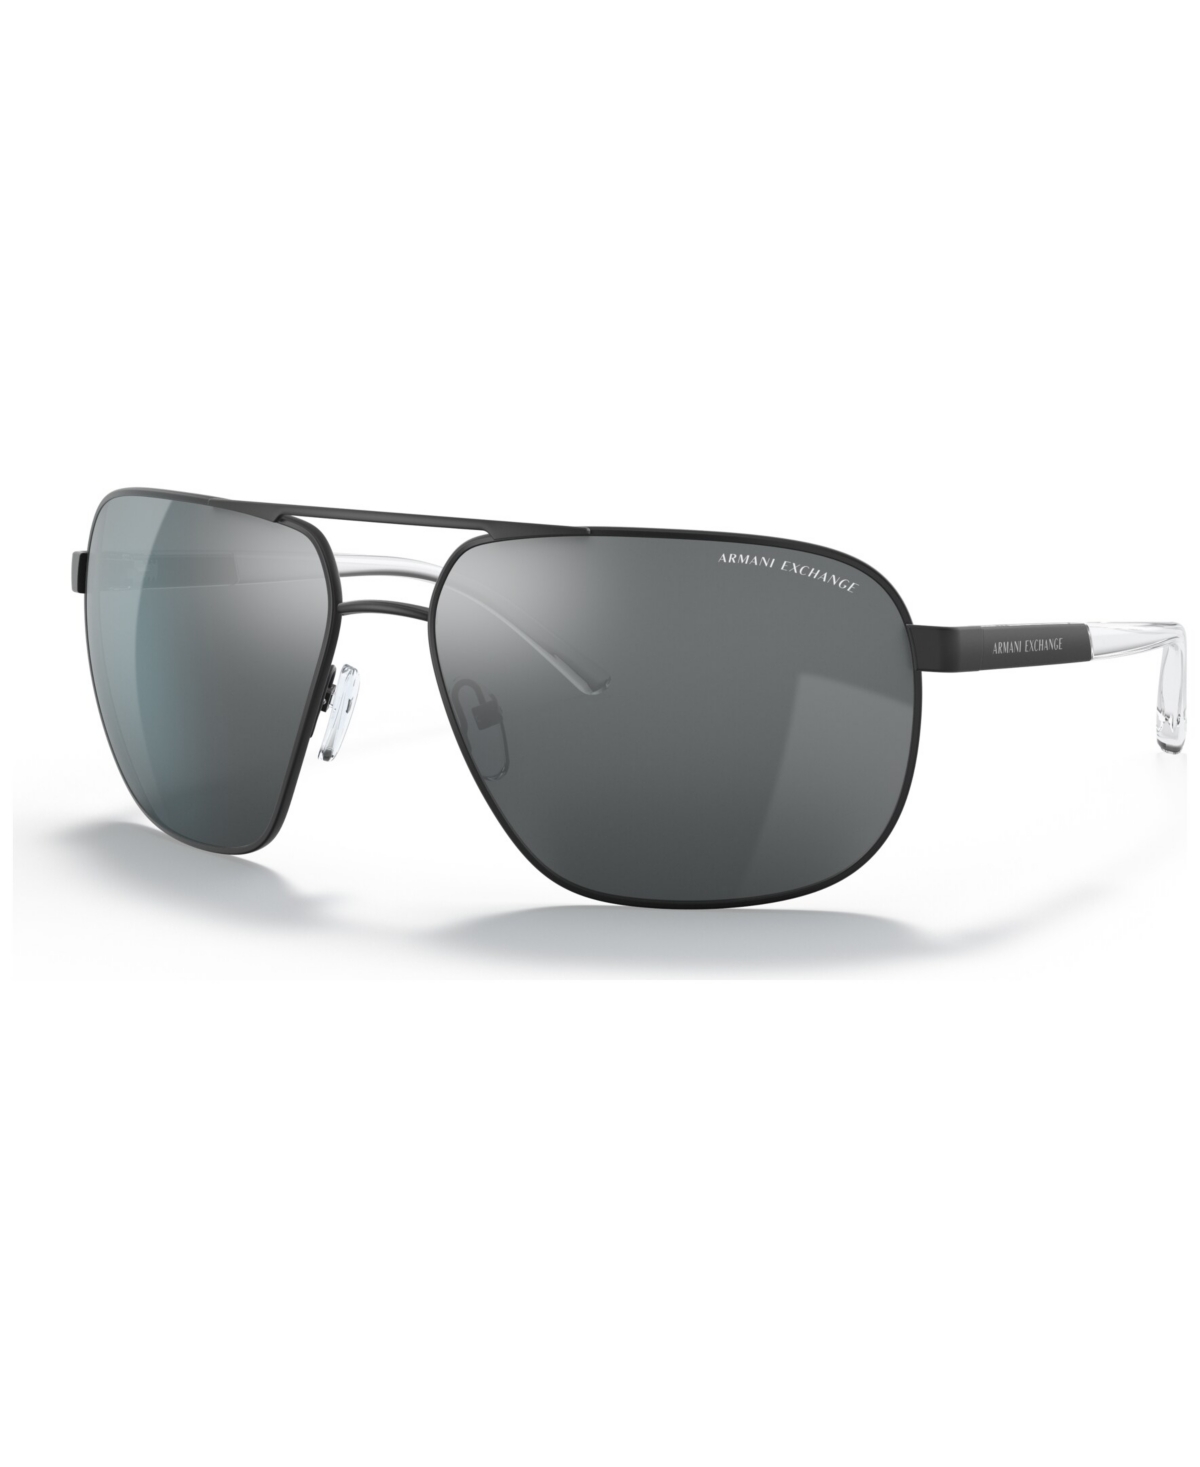 Ax Armani Exchange Men's Sunglasses, Ax2040s In Matte Black